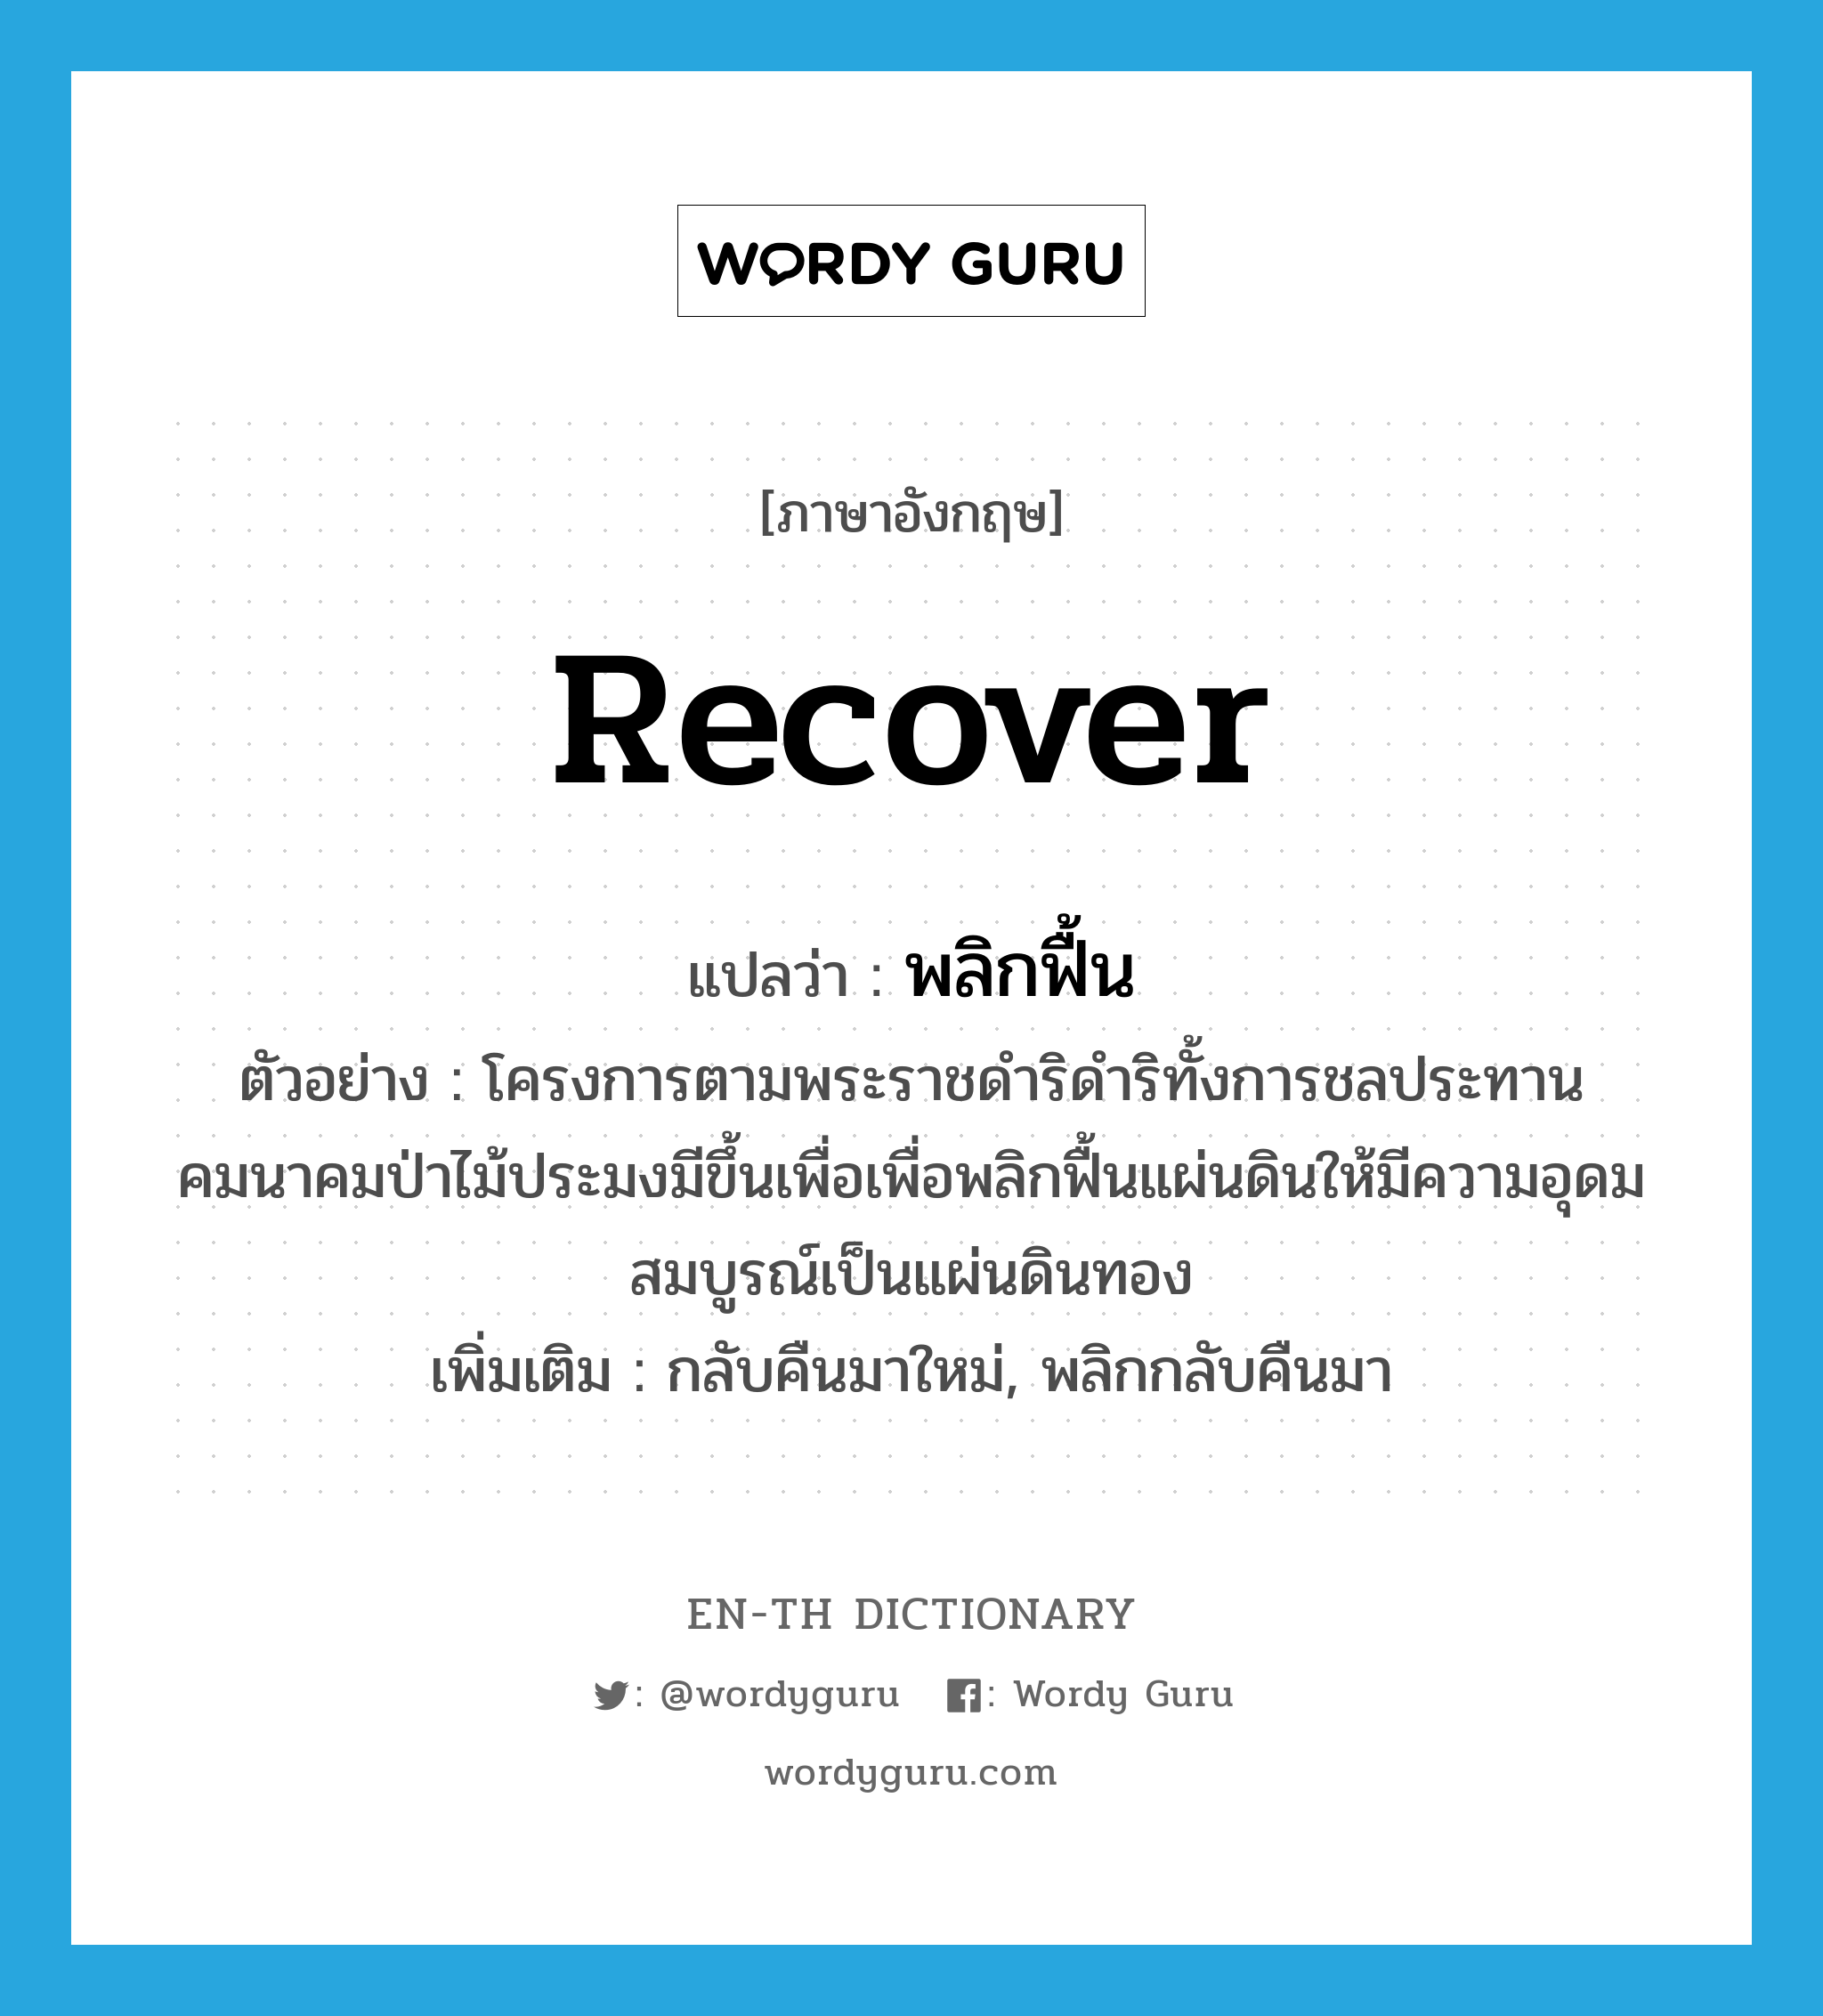 recover แปลว่า?, คำศัพท์ภาษาอังกฤษ recover แปลว่า พลิกฟื้น ประเภท V ตัวอย่าง โครงการตามพระราชดำริดำริทั้งการชลประทานคมนาคมป่าไม้ประมงมีขึ้นเพื่อเพื่อพลิกฟื้นแผ่นดินให้มีความอุดมสมบูรณ์เป็นแผ่นดินทอง เพิ่มเติม กลับคืนมาใหม่, พลิกกลับคืนมา หมวด V